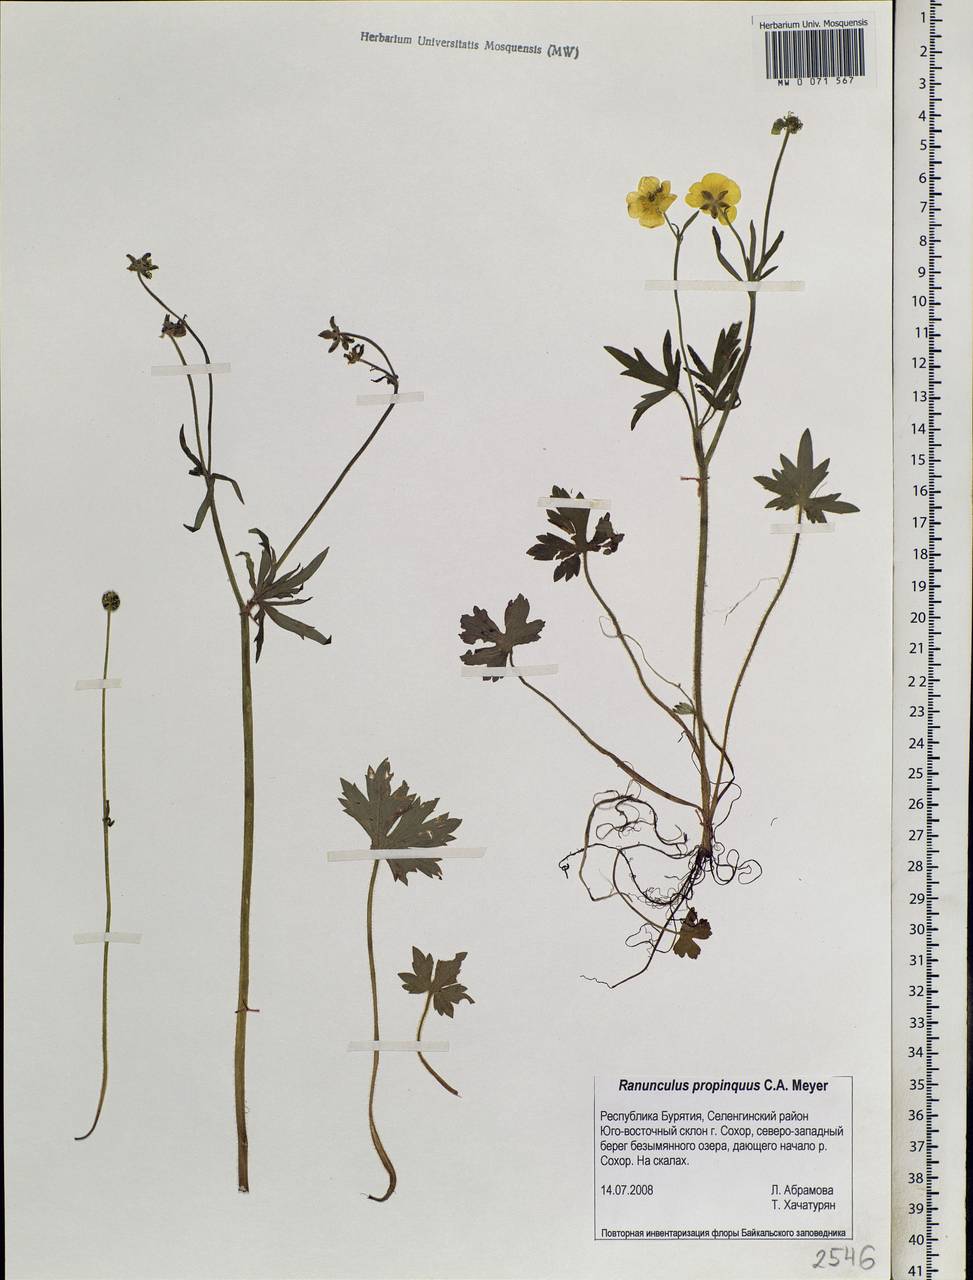 Диаграмма цветка Ranunculus propinquus